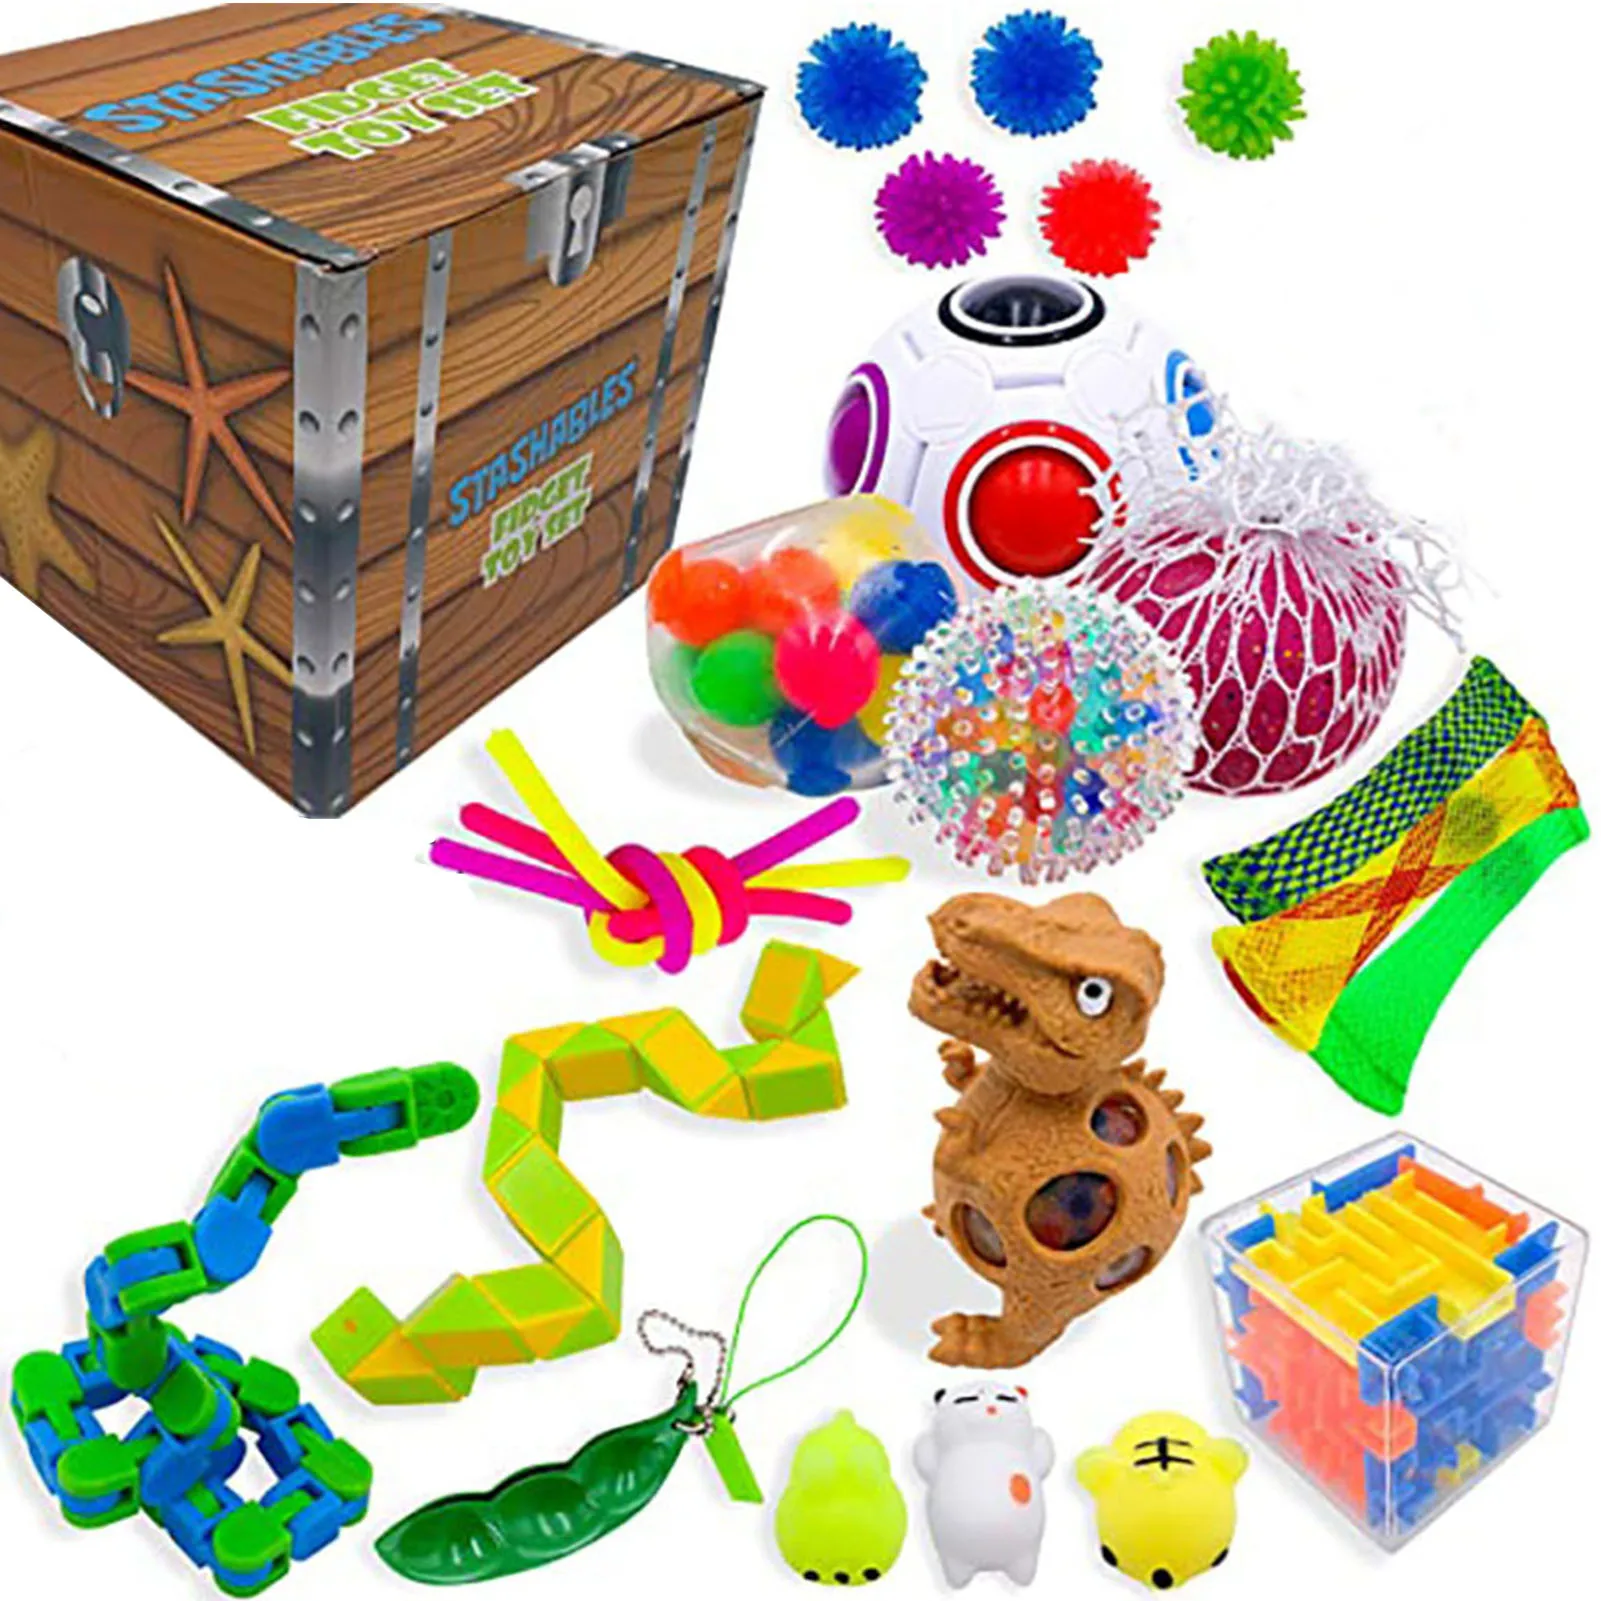 

Игрушки-антистресс для детей и взрослых, тревожность, антистресс, игрушки для снятия стресса, пузырьки, сенсорные игрушки для декомпрессии, ...